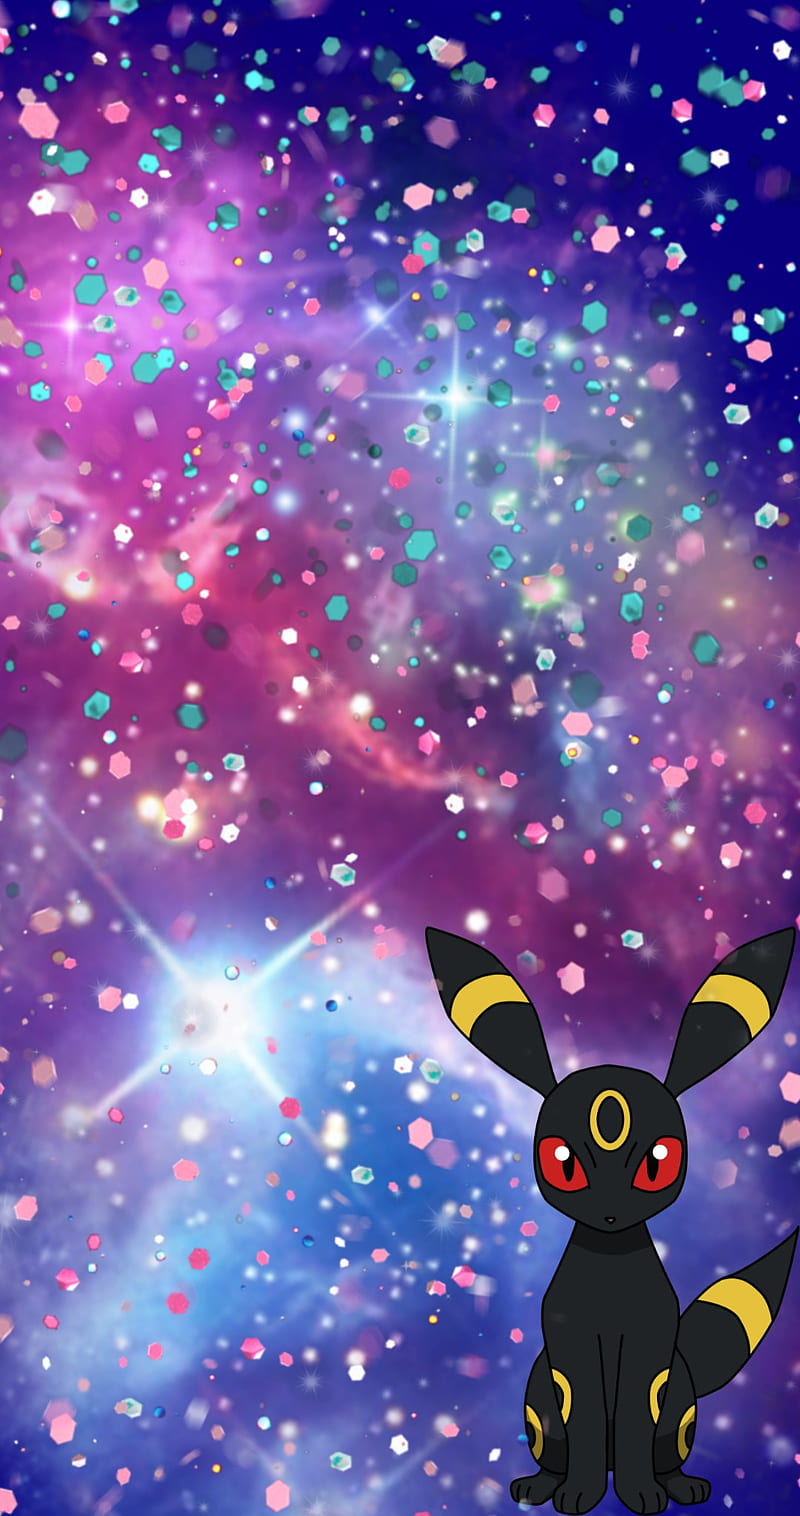 Hãy khám phá sự tiến hóa kỳ diệu của Eevee và Umbreon qua những hình ảnh độc đáo giữa sao chổi, ngôi sao, và sắc đỏ nặng trĩu các hạt phấn. Những gam màu chói lọi đầy hi vọng sẽ đưa bạn đến một không gian mới mẻ và phấn khích. Bạn có thể tưởng tượng được chiến binh Pokémon của mình trông như thế nào trong không gian rực rỡ này không?